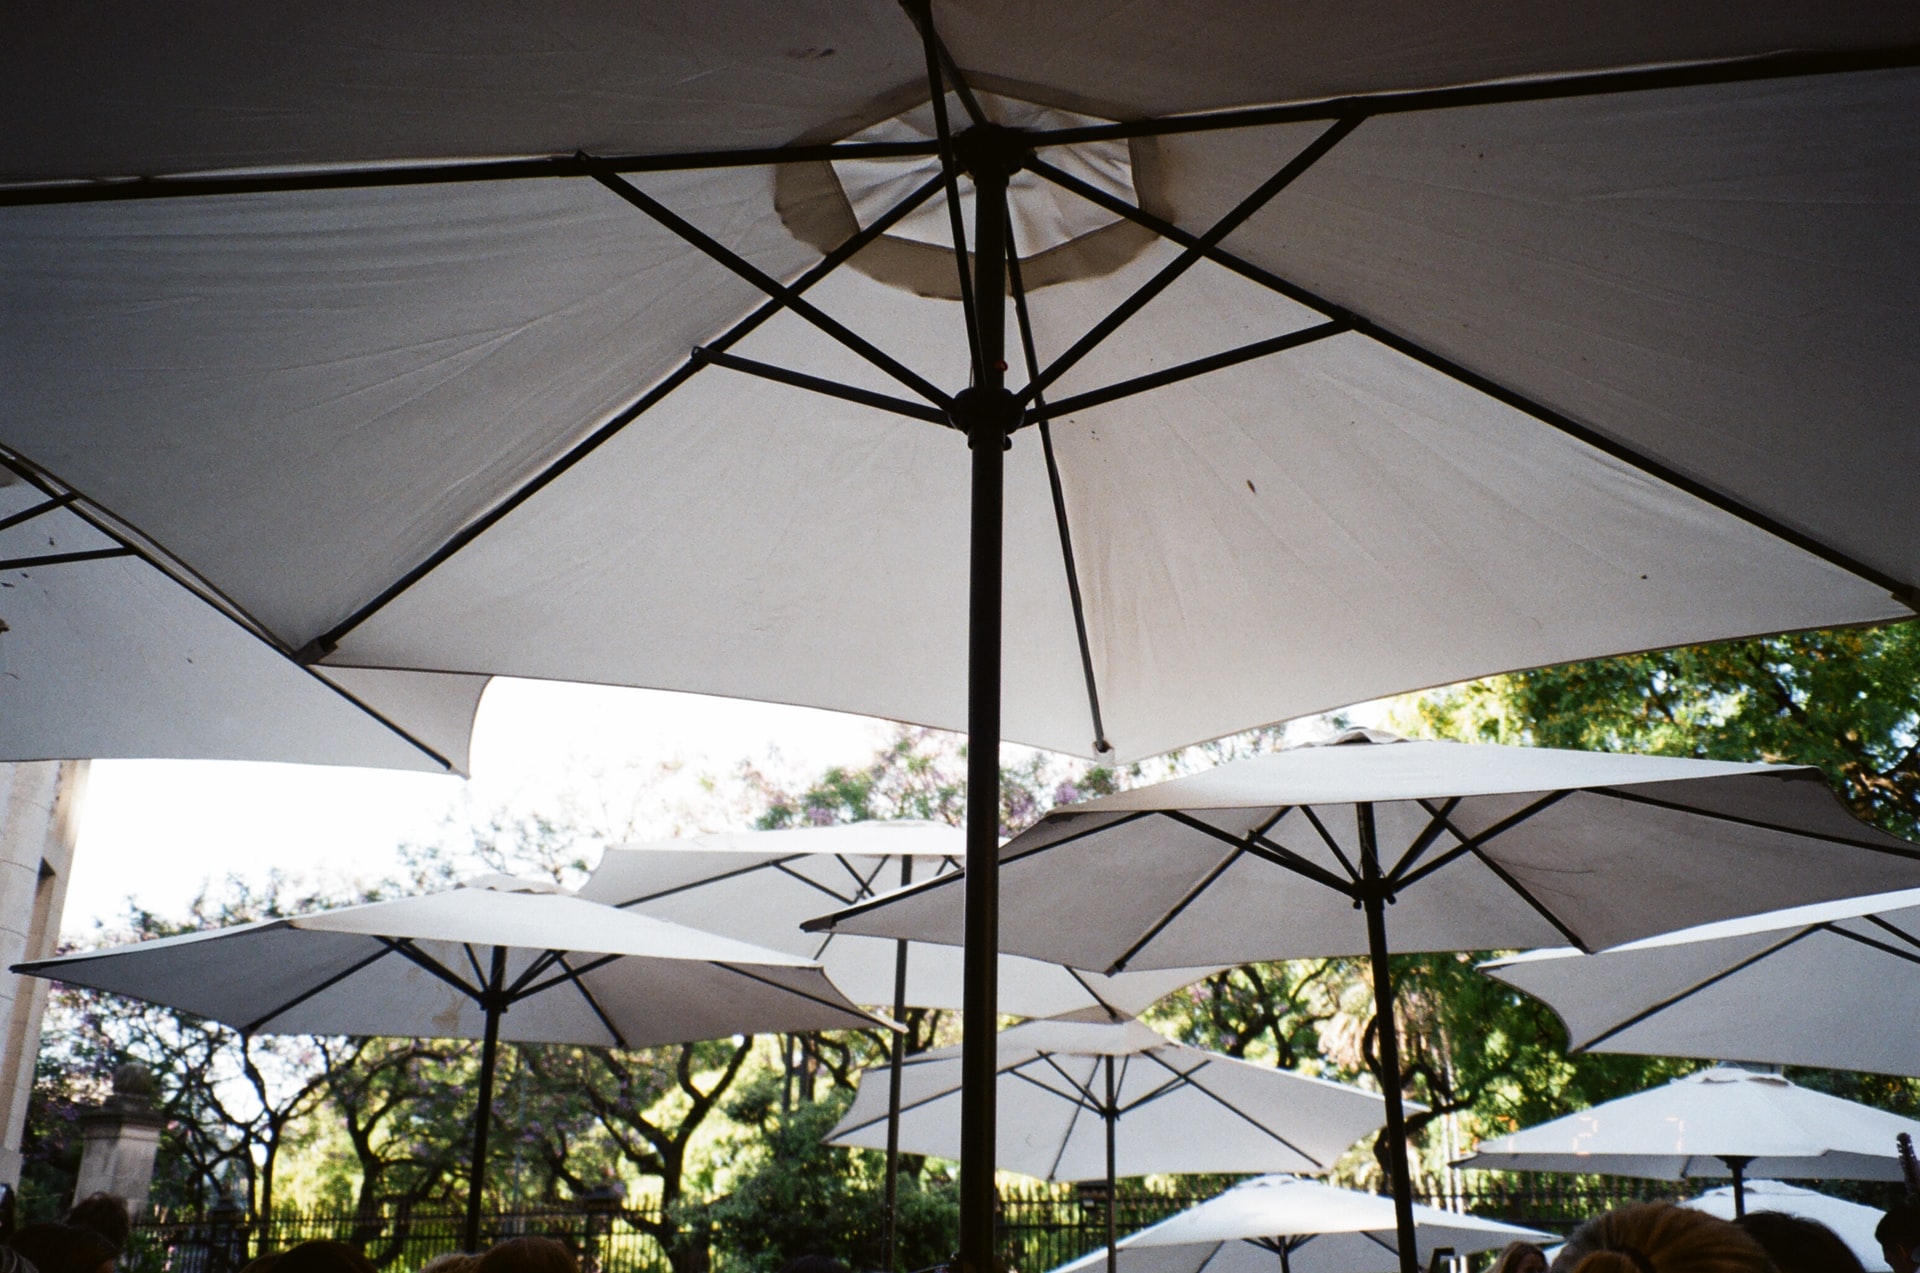 Protection from the sun. Garden umbrellas